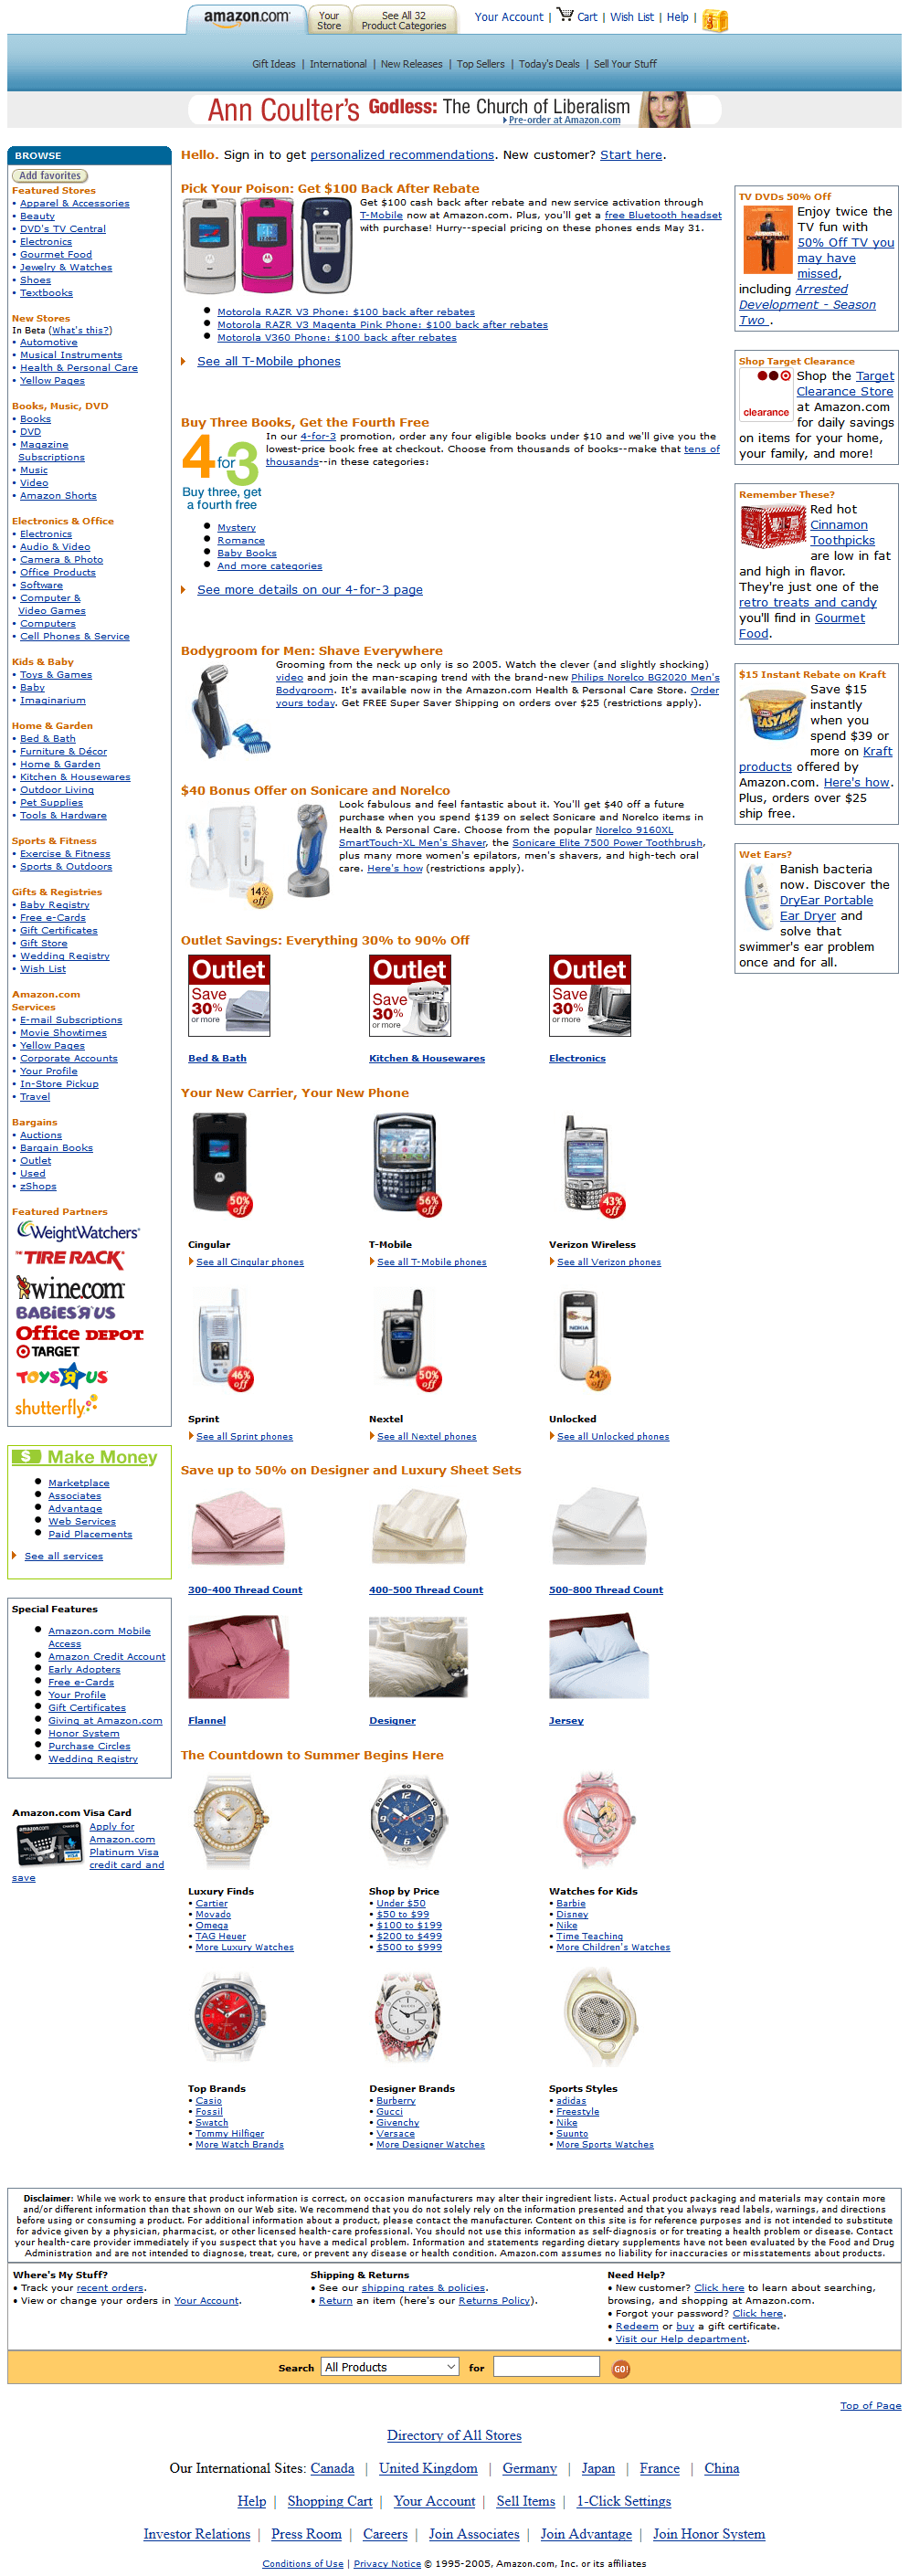 Amazon website in 2006